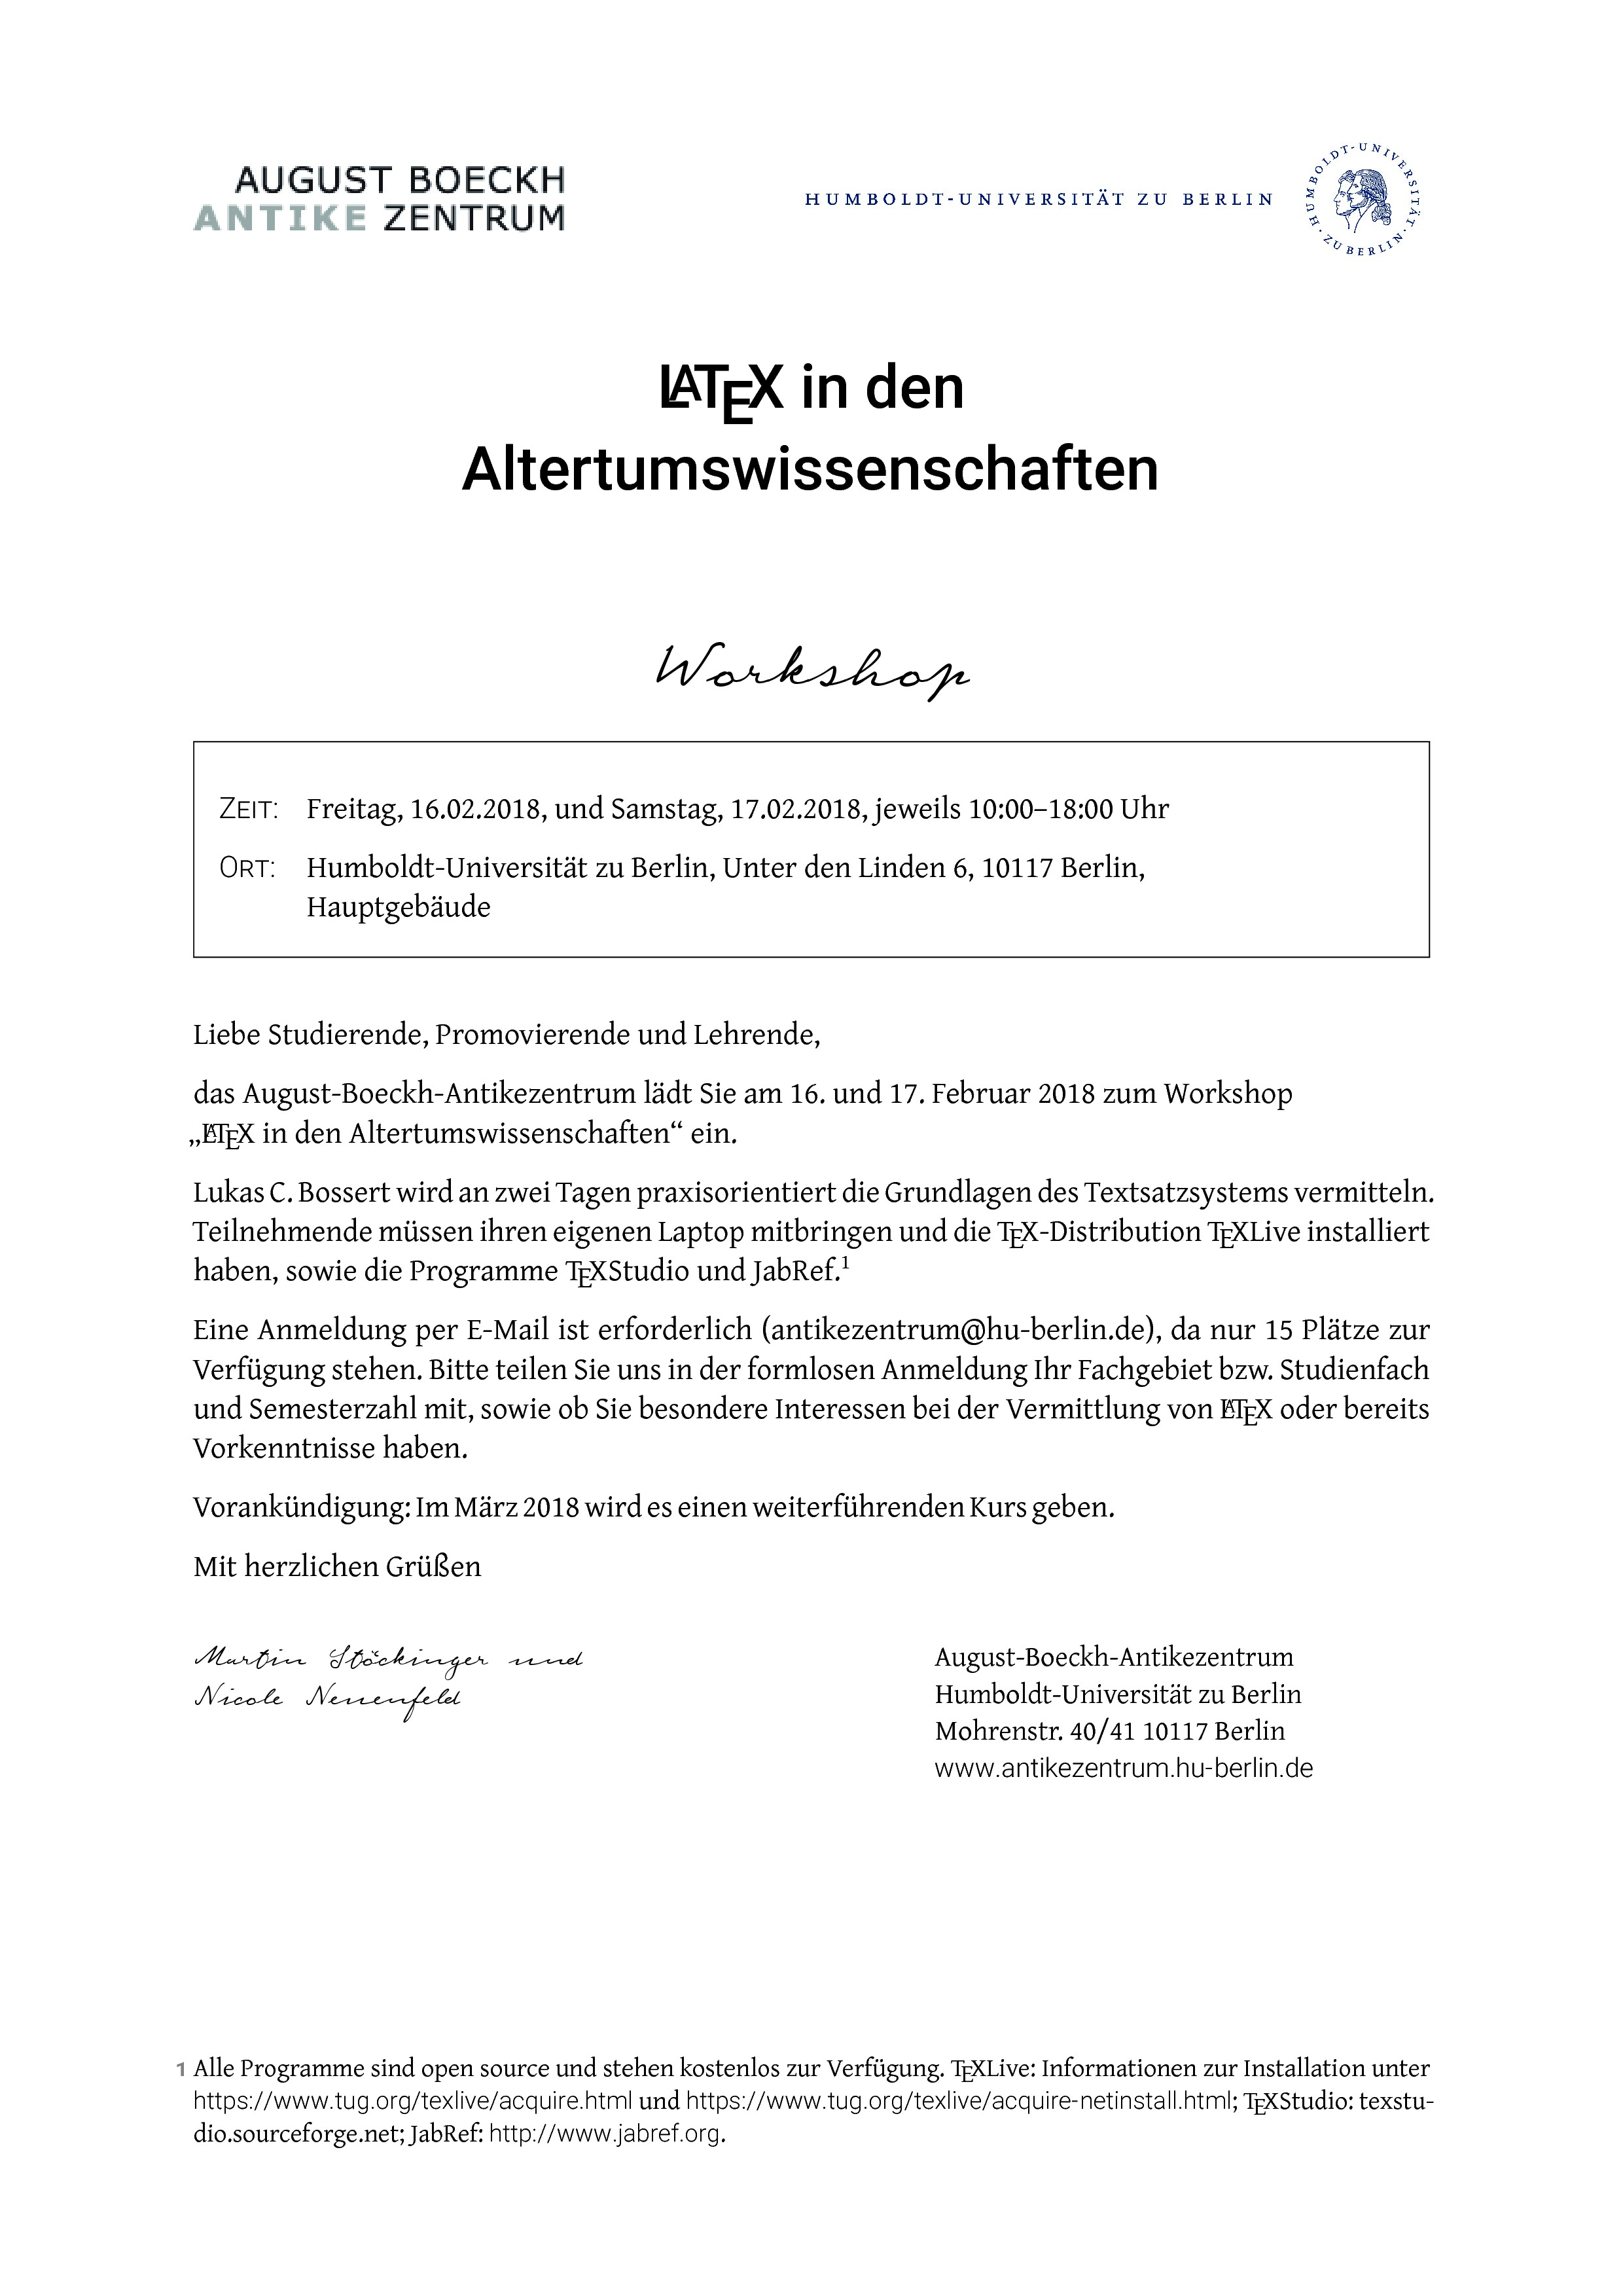 latex_altertumswissenschaften_Anfänger2018.jpg